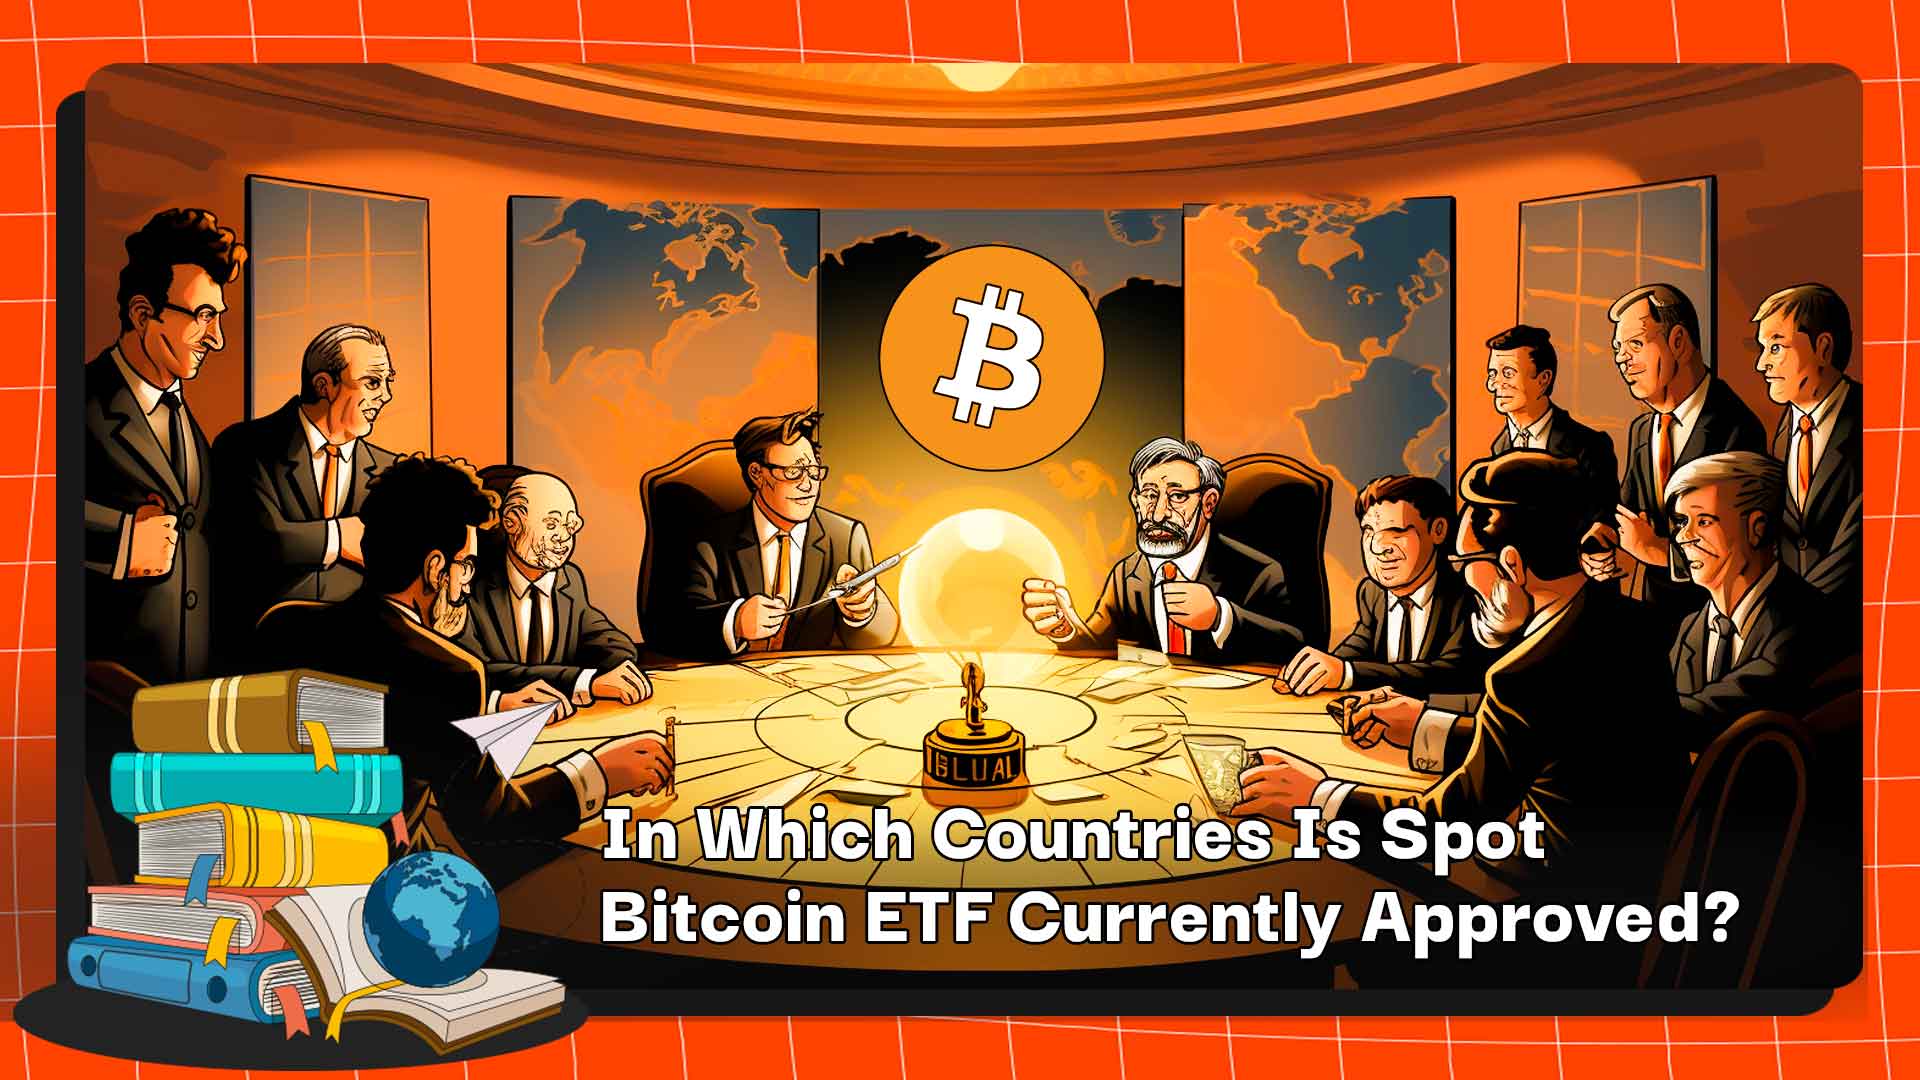 Spot Bitcoin ETF hiện được chấp thuận giao dịch ở những quốc gia nào?